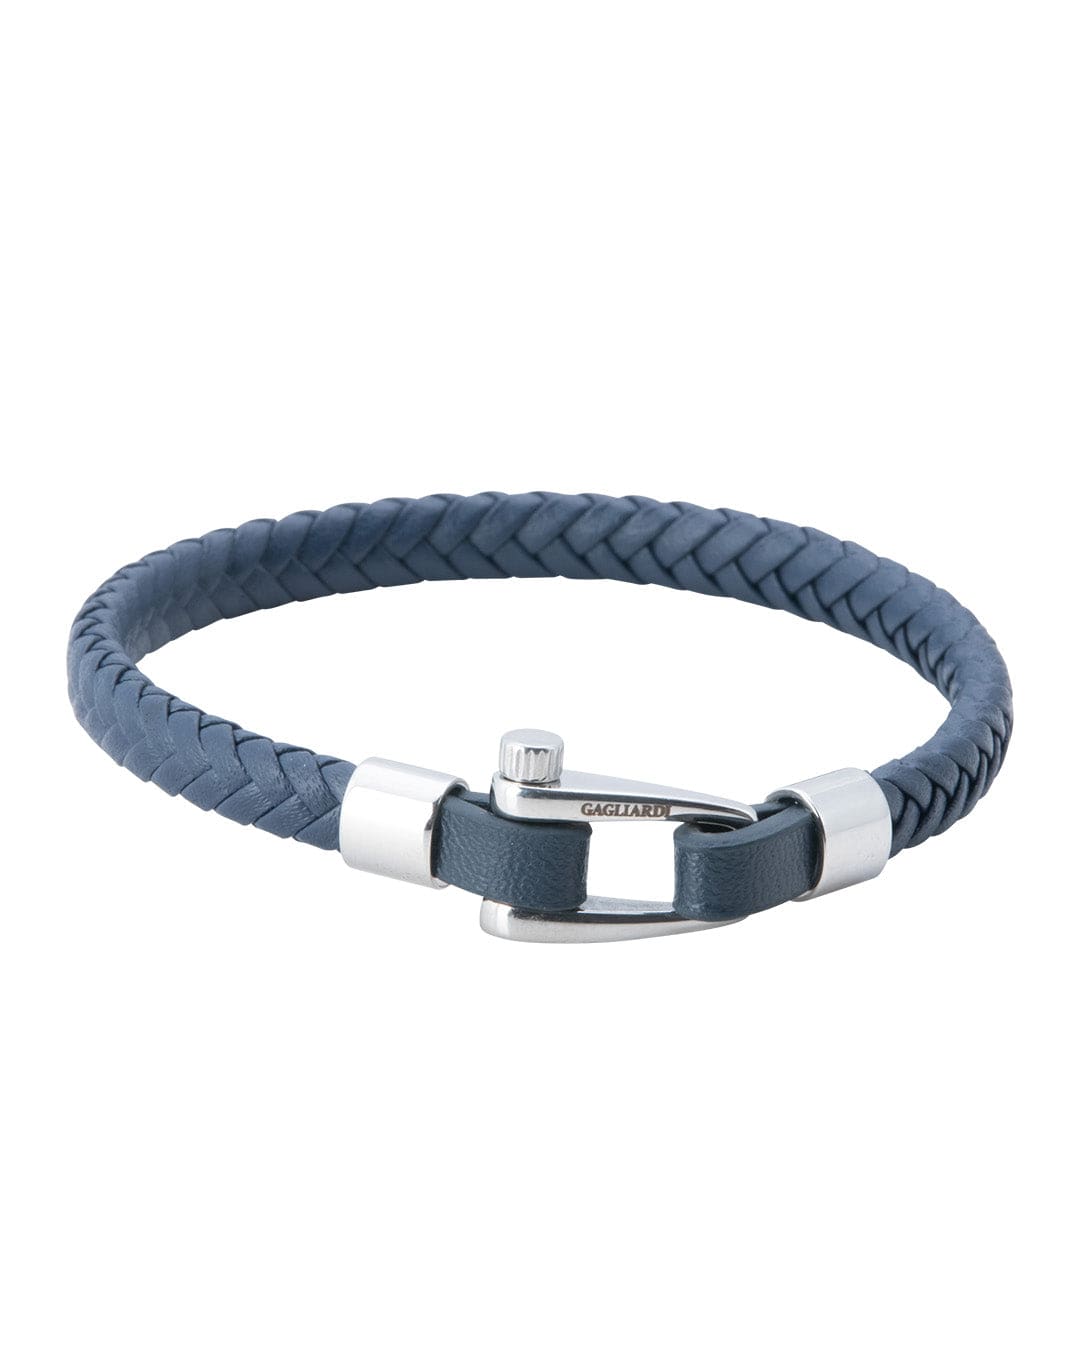 Gagliardi Bracelets Gagliardi Navy Braided Leather Bracelet With Polished Steel Screw Clasp